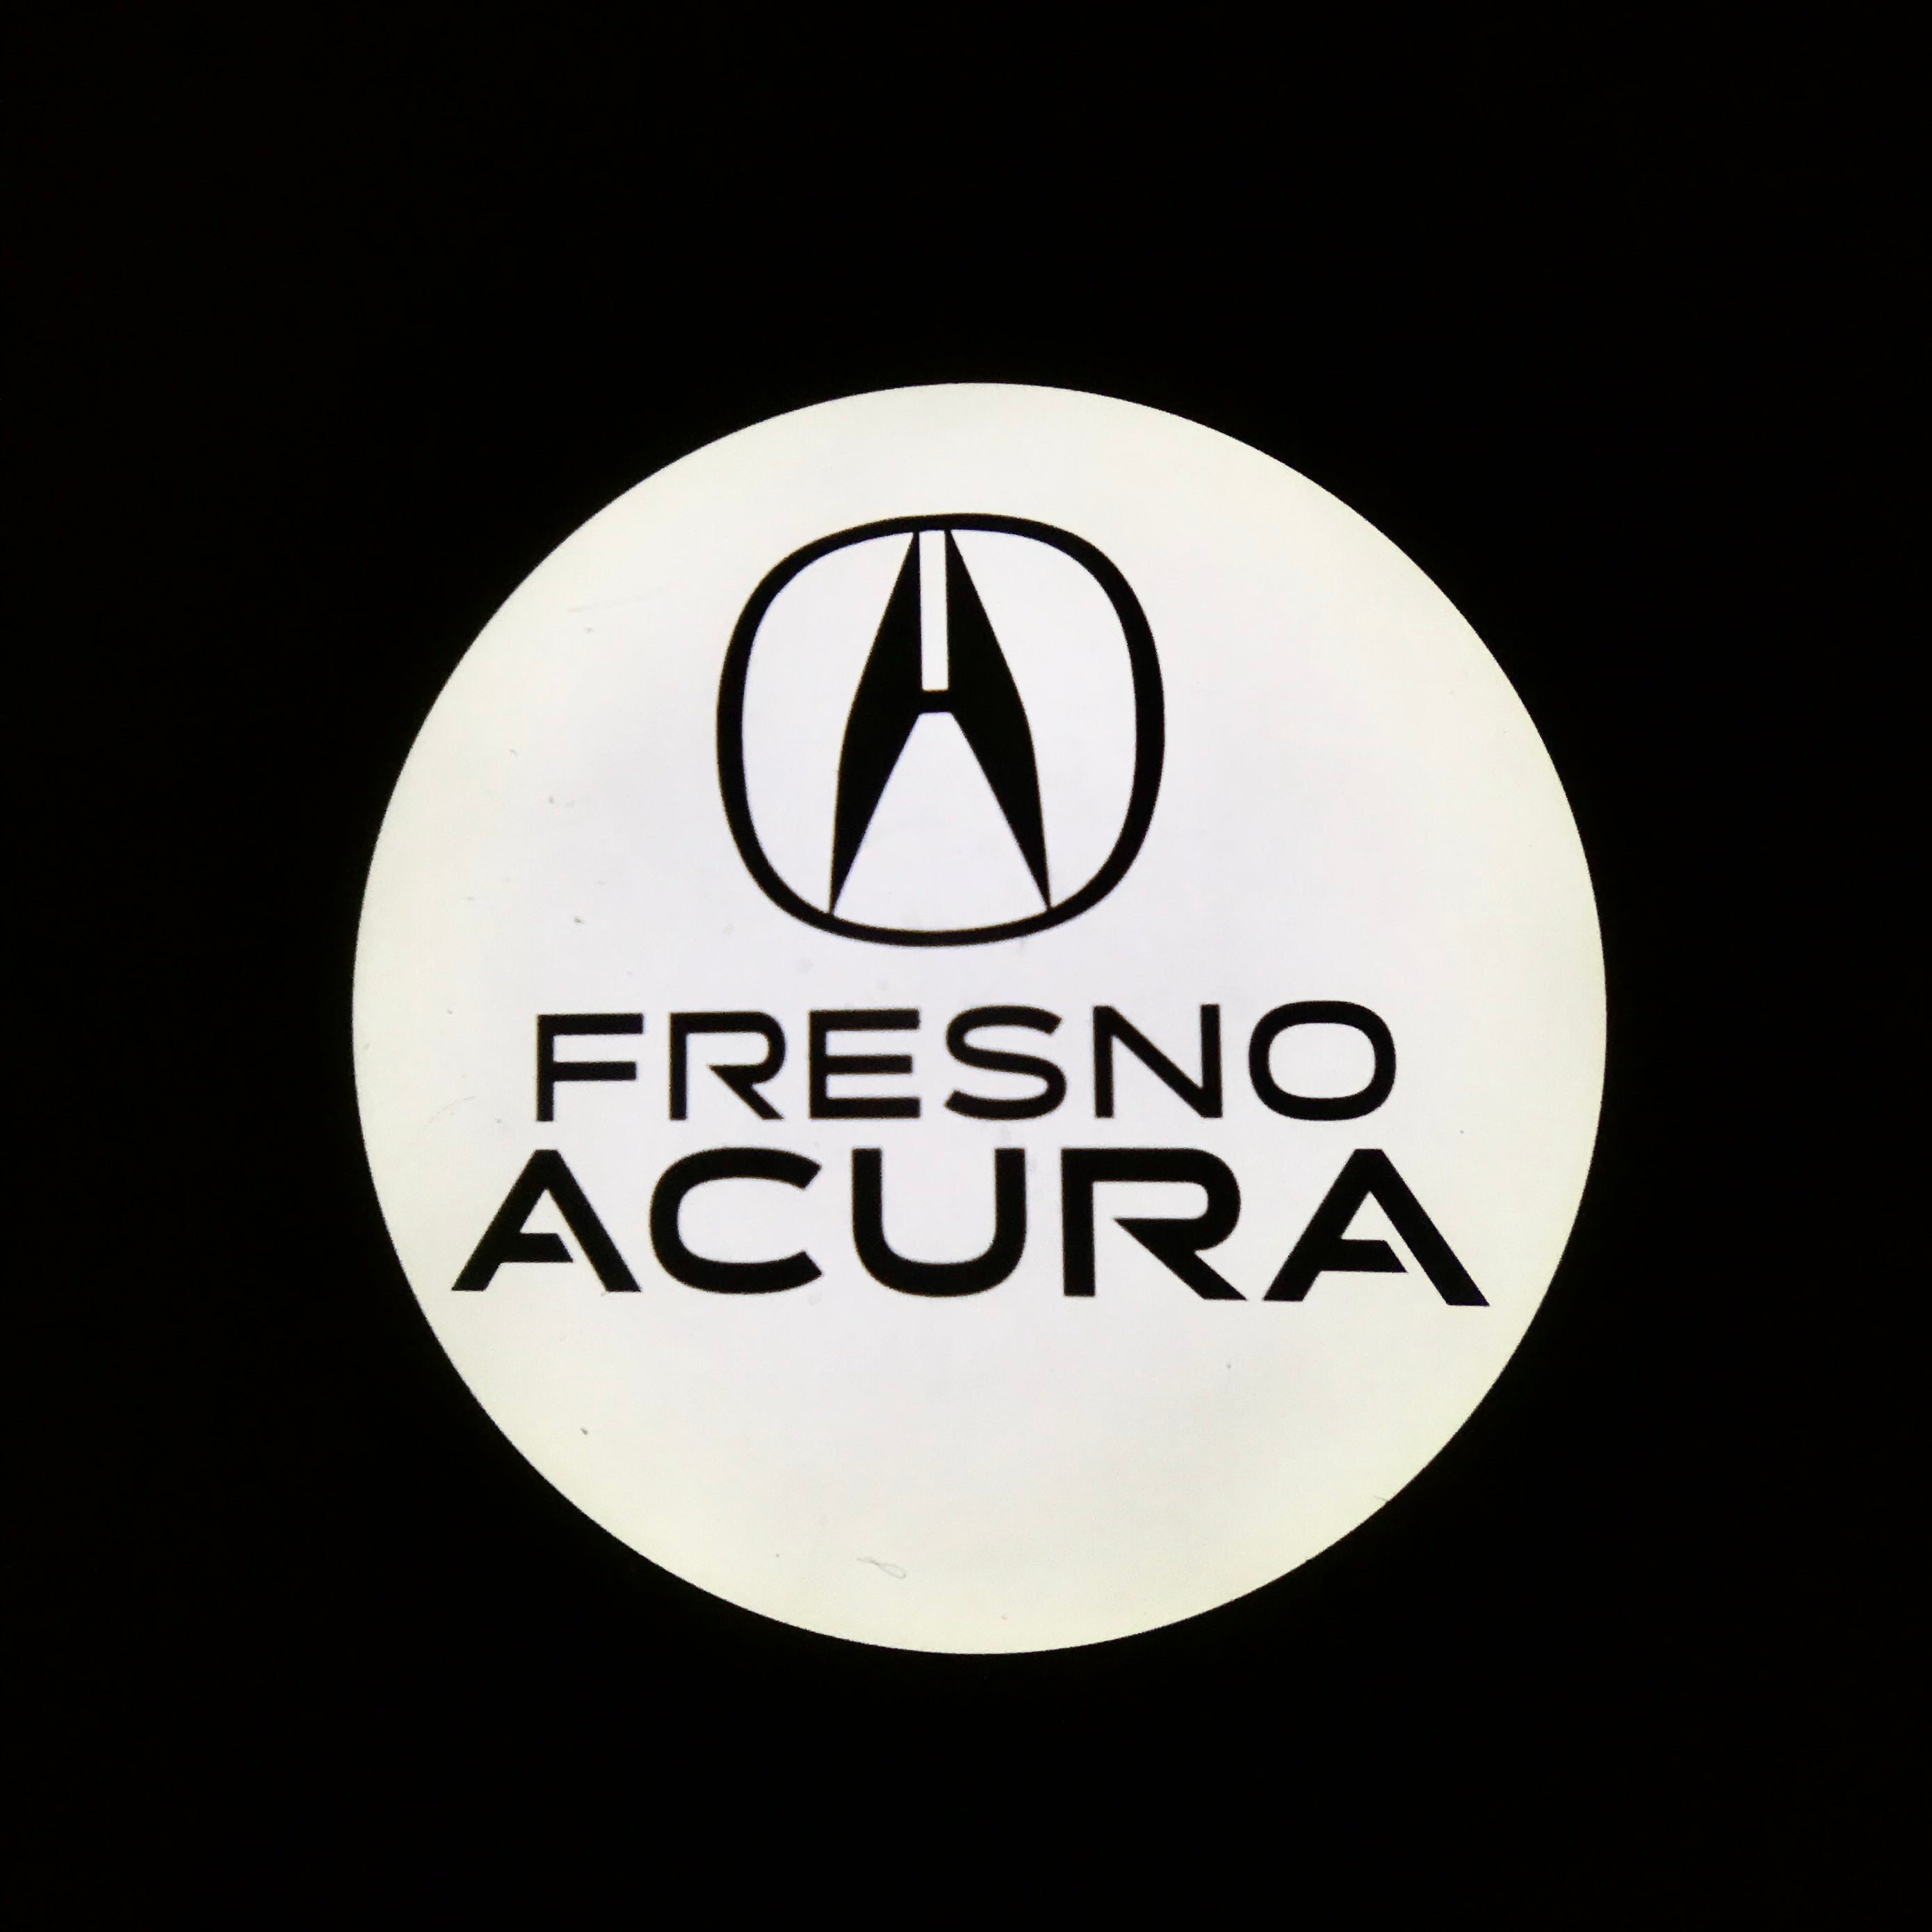 15th May 2023—Fresno Acura